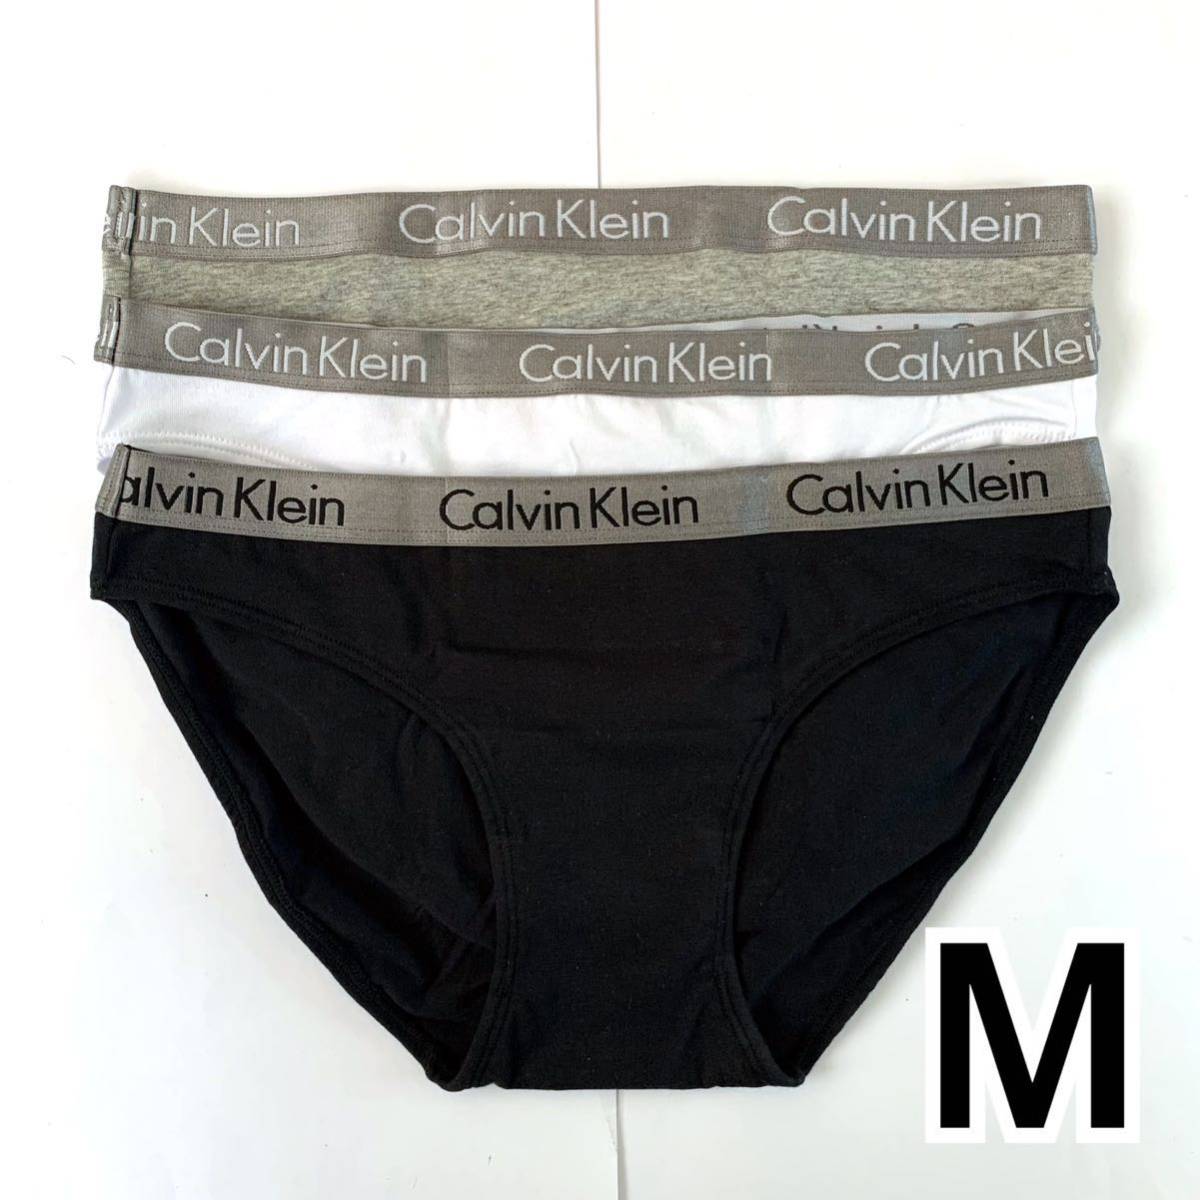 Calvin Klein アンダーウェア コットンビキニ Mサイズ 3枚セット レディース 送料無料 最短発送 下着 女性下着 ショーツ パンツ パンティー_画像3